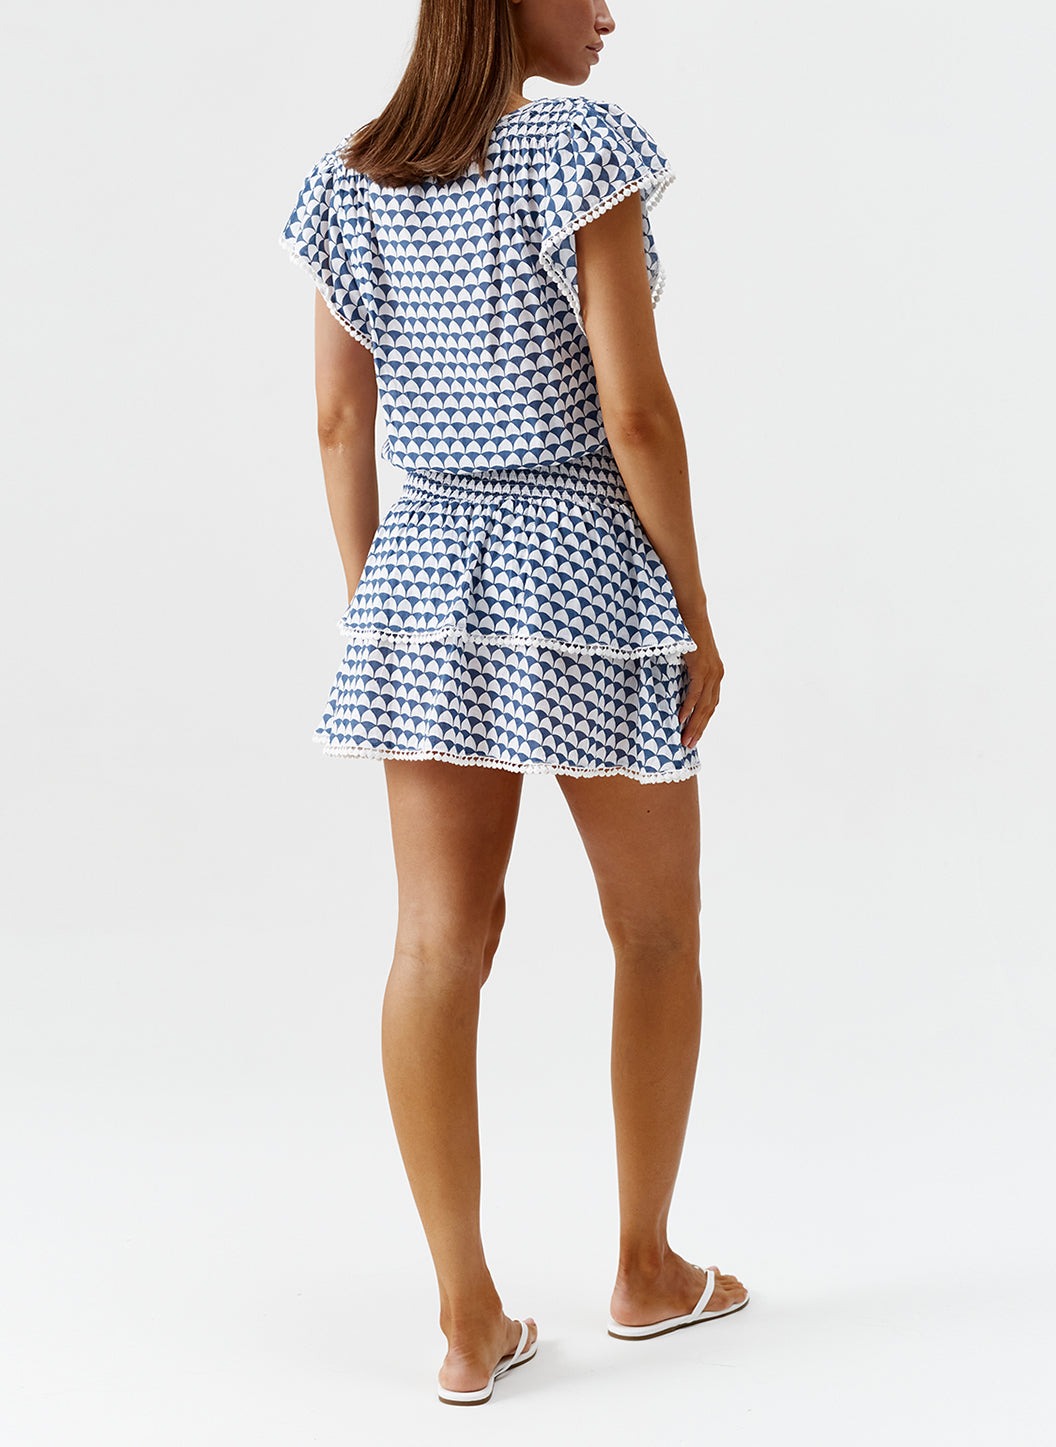 Exclusive Sarah Amalfi Tiered Skirt Short Dress | Melissa Odabash